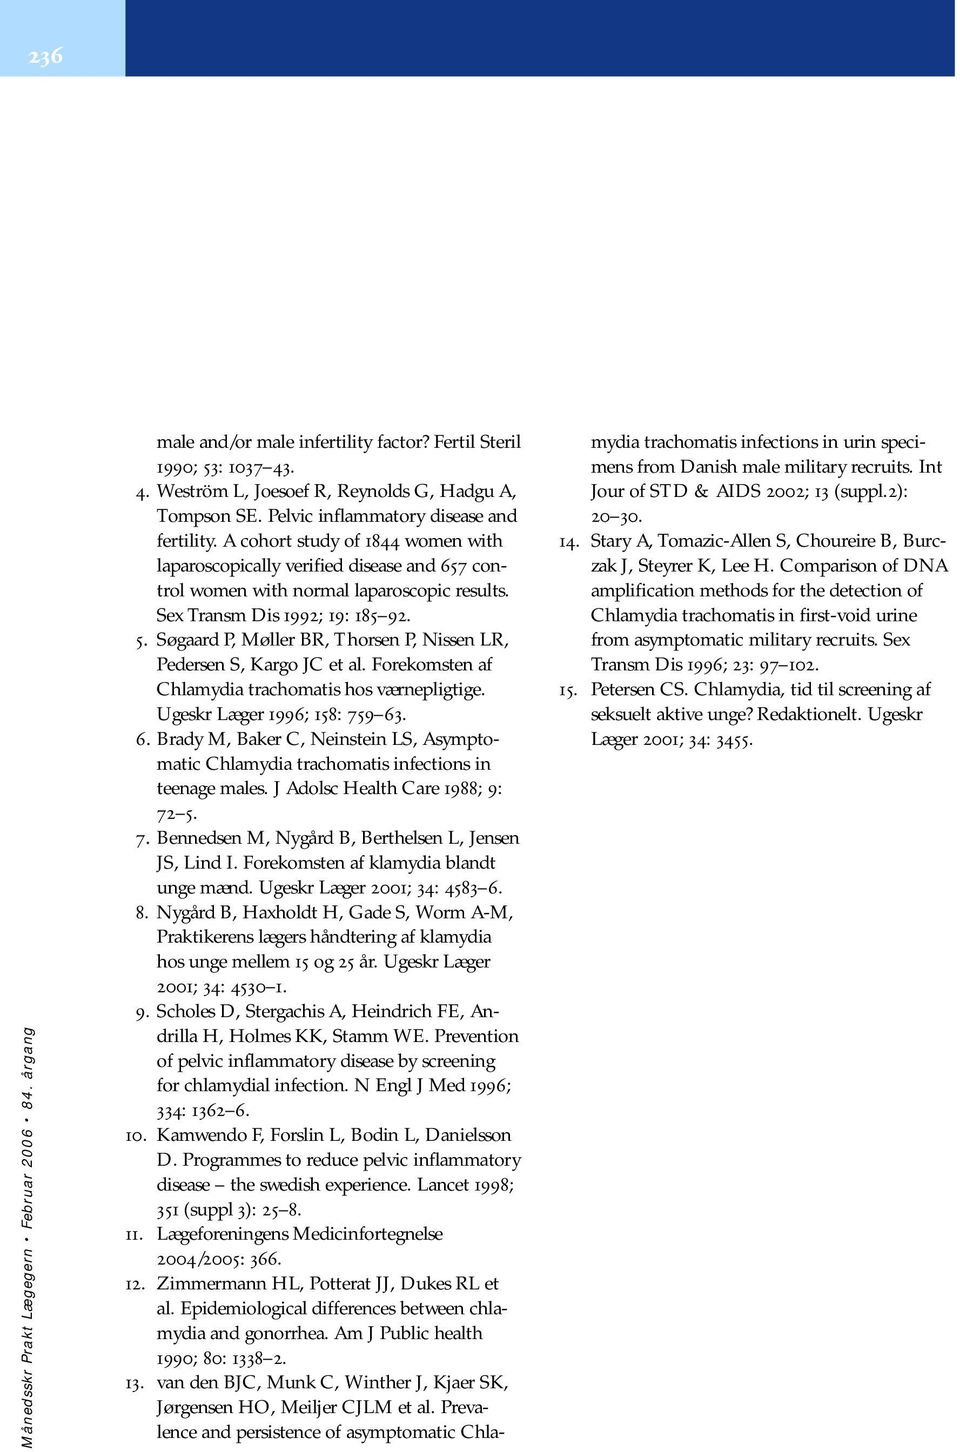 Søgaard P, Møller BR, Thorsen P, Nissen LR, Pedersen S, Kargo JC et al. Forekomsten af Chlamydia trachomatis hos værnepligtige. Ugeskr Læger 1996; 158: 759 63